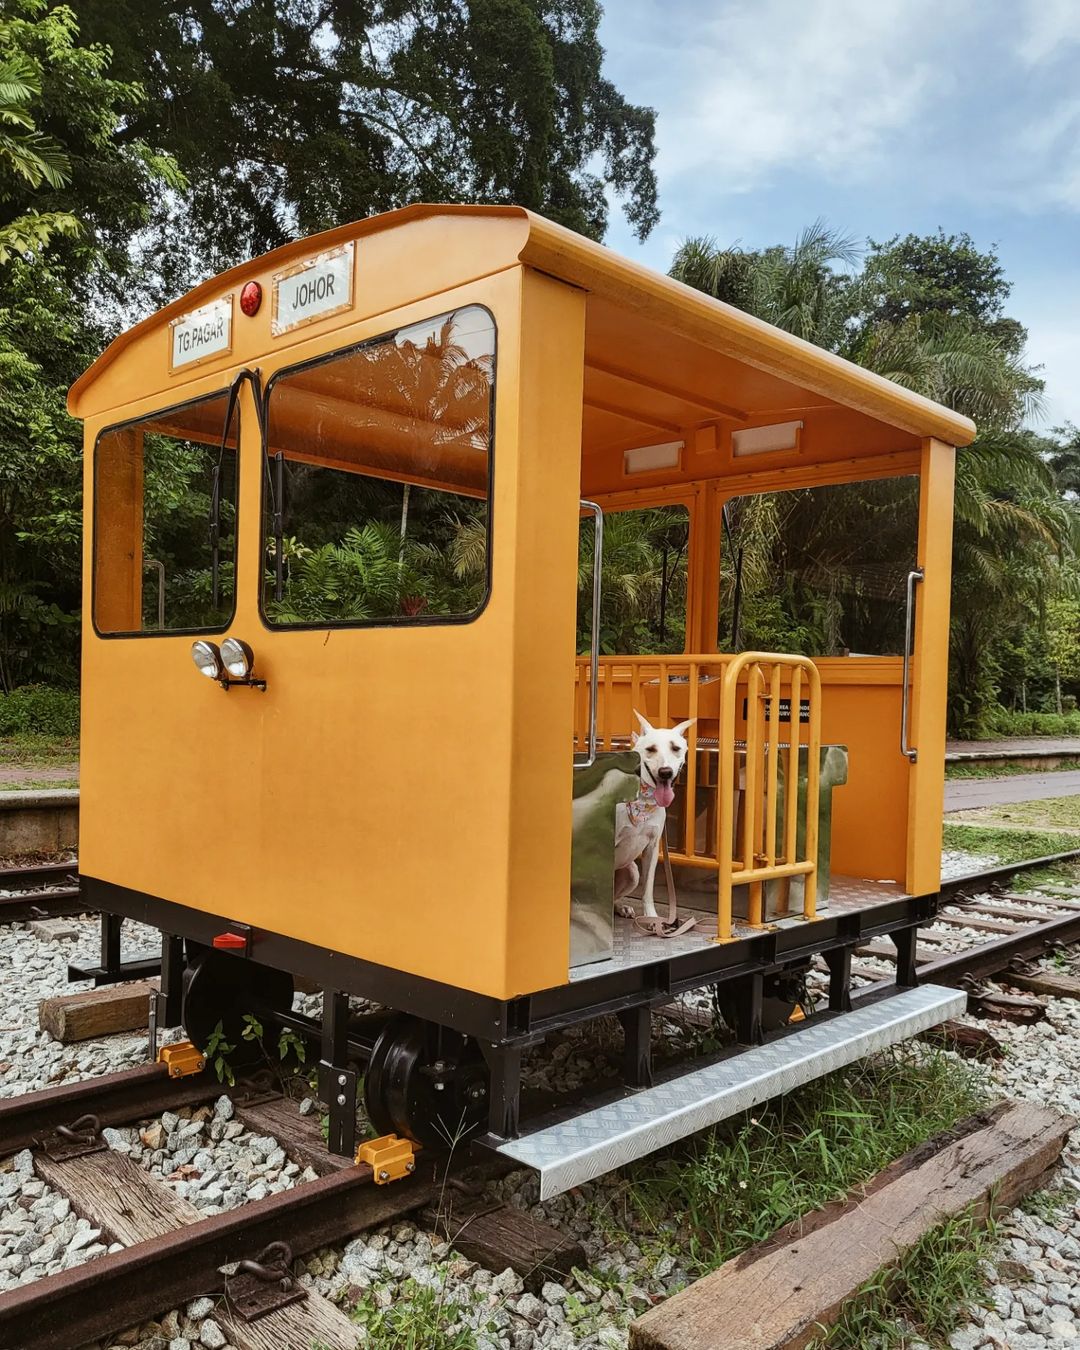 bukit timah railway station - service wagon